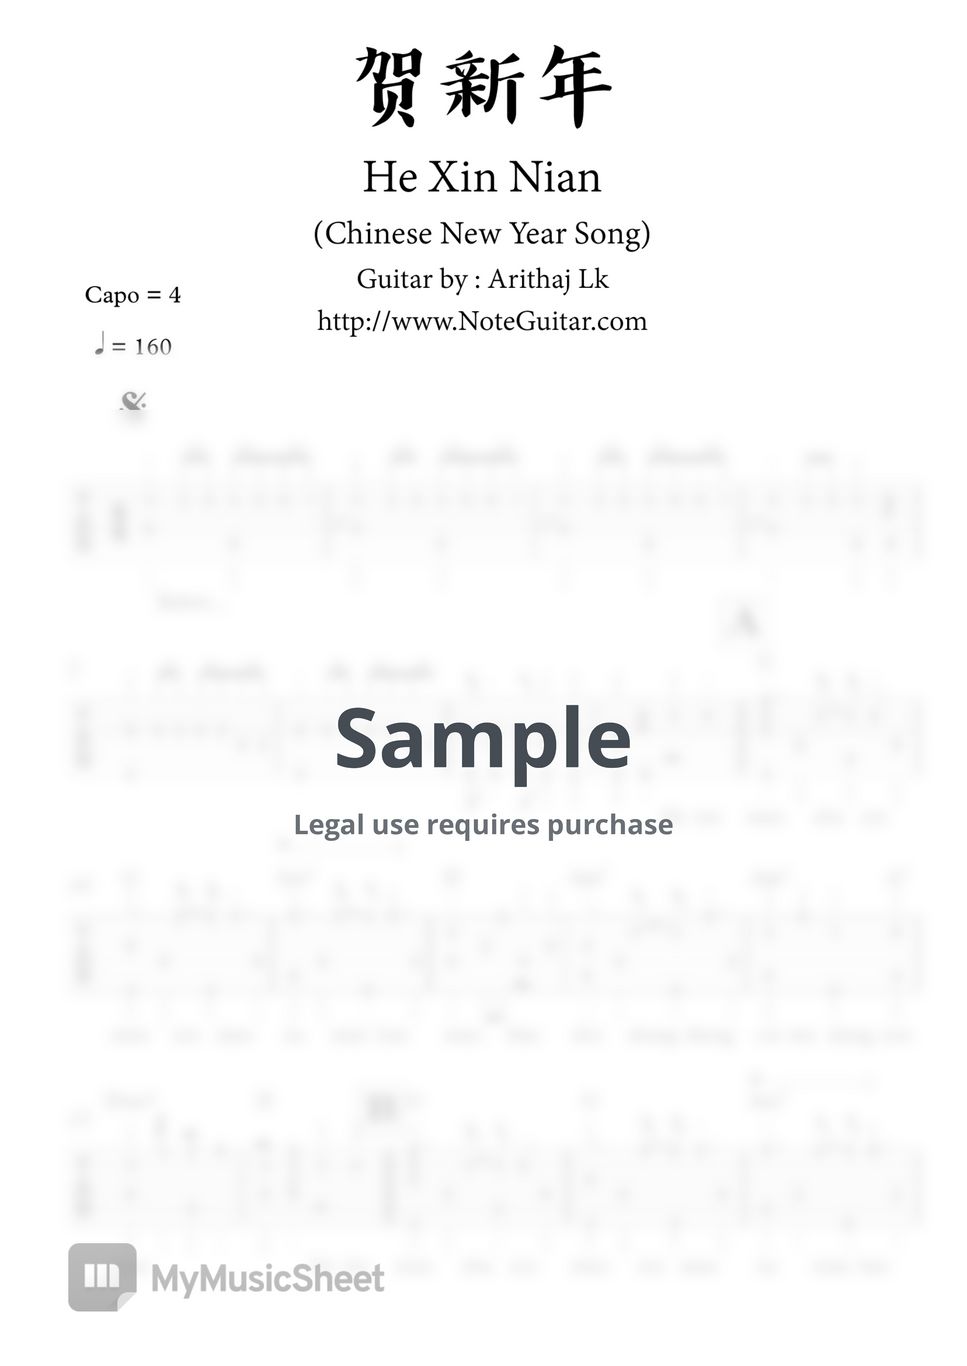 贺新年 He Xin Nian (Chinese New Year Song) - Fingerstyle Guitar by Arithaj Lk